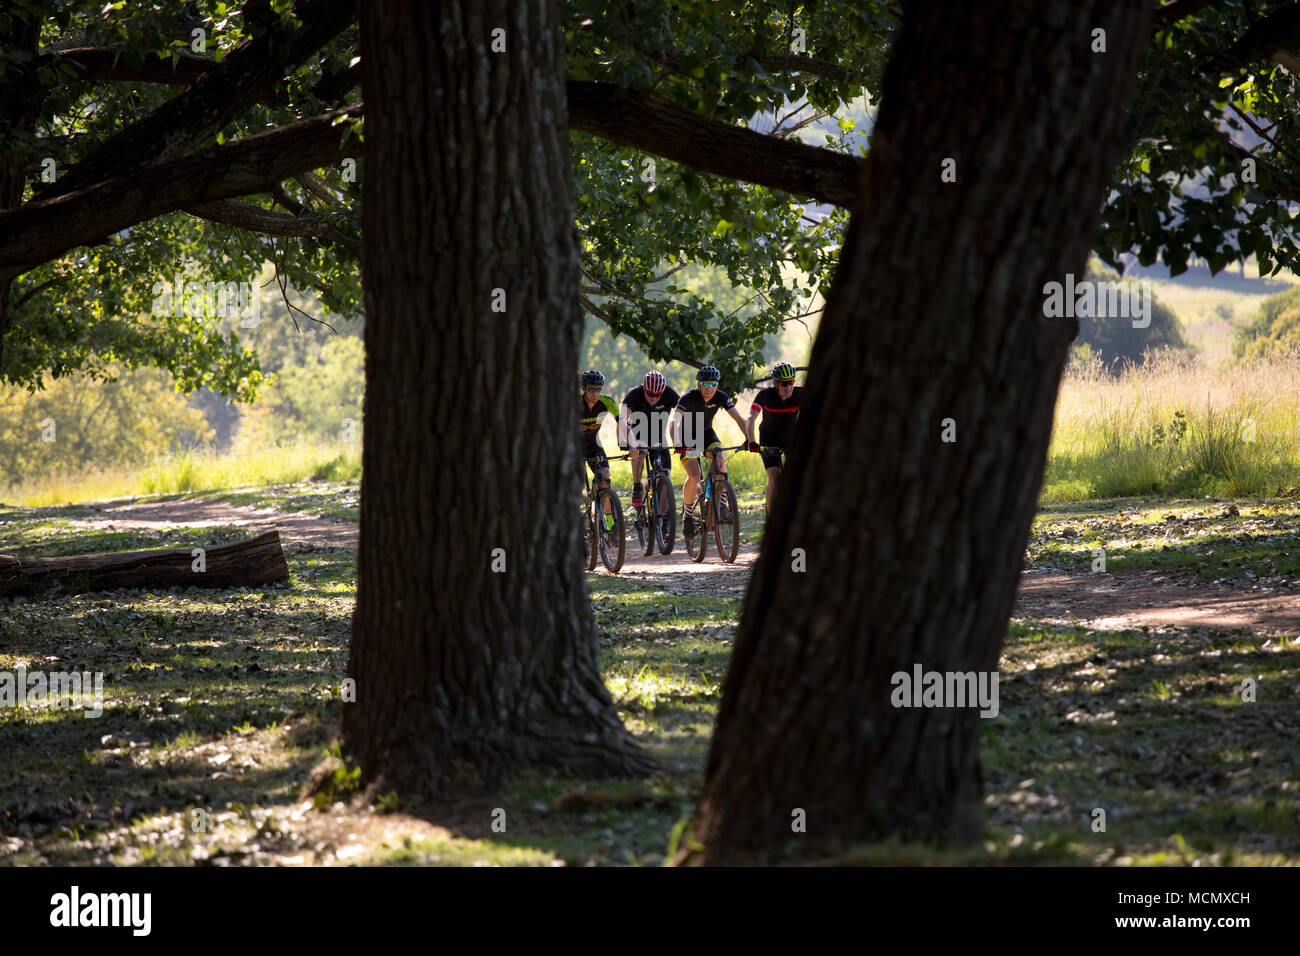 Los ciclistas recorriendo un parque Foto de stock